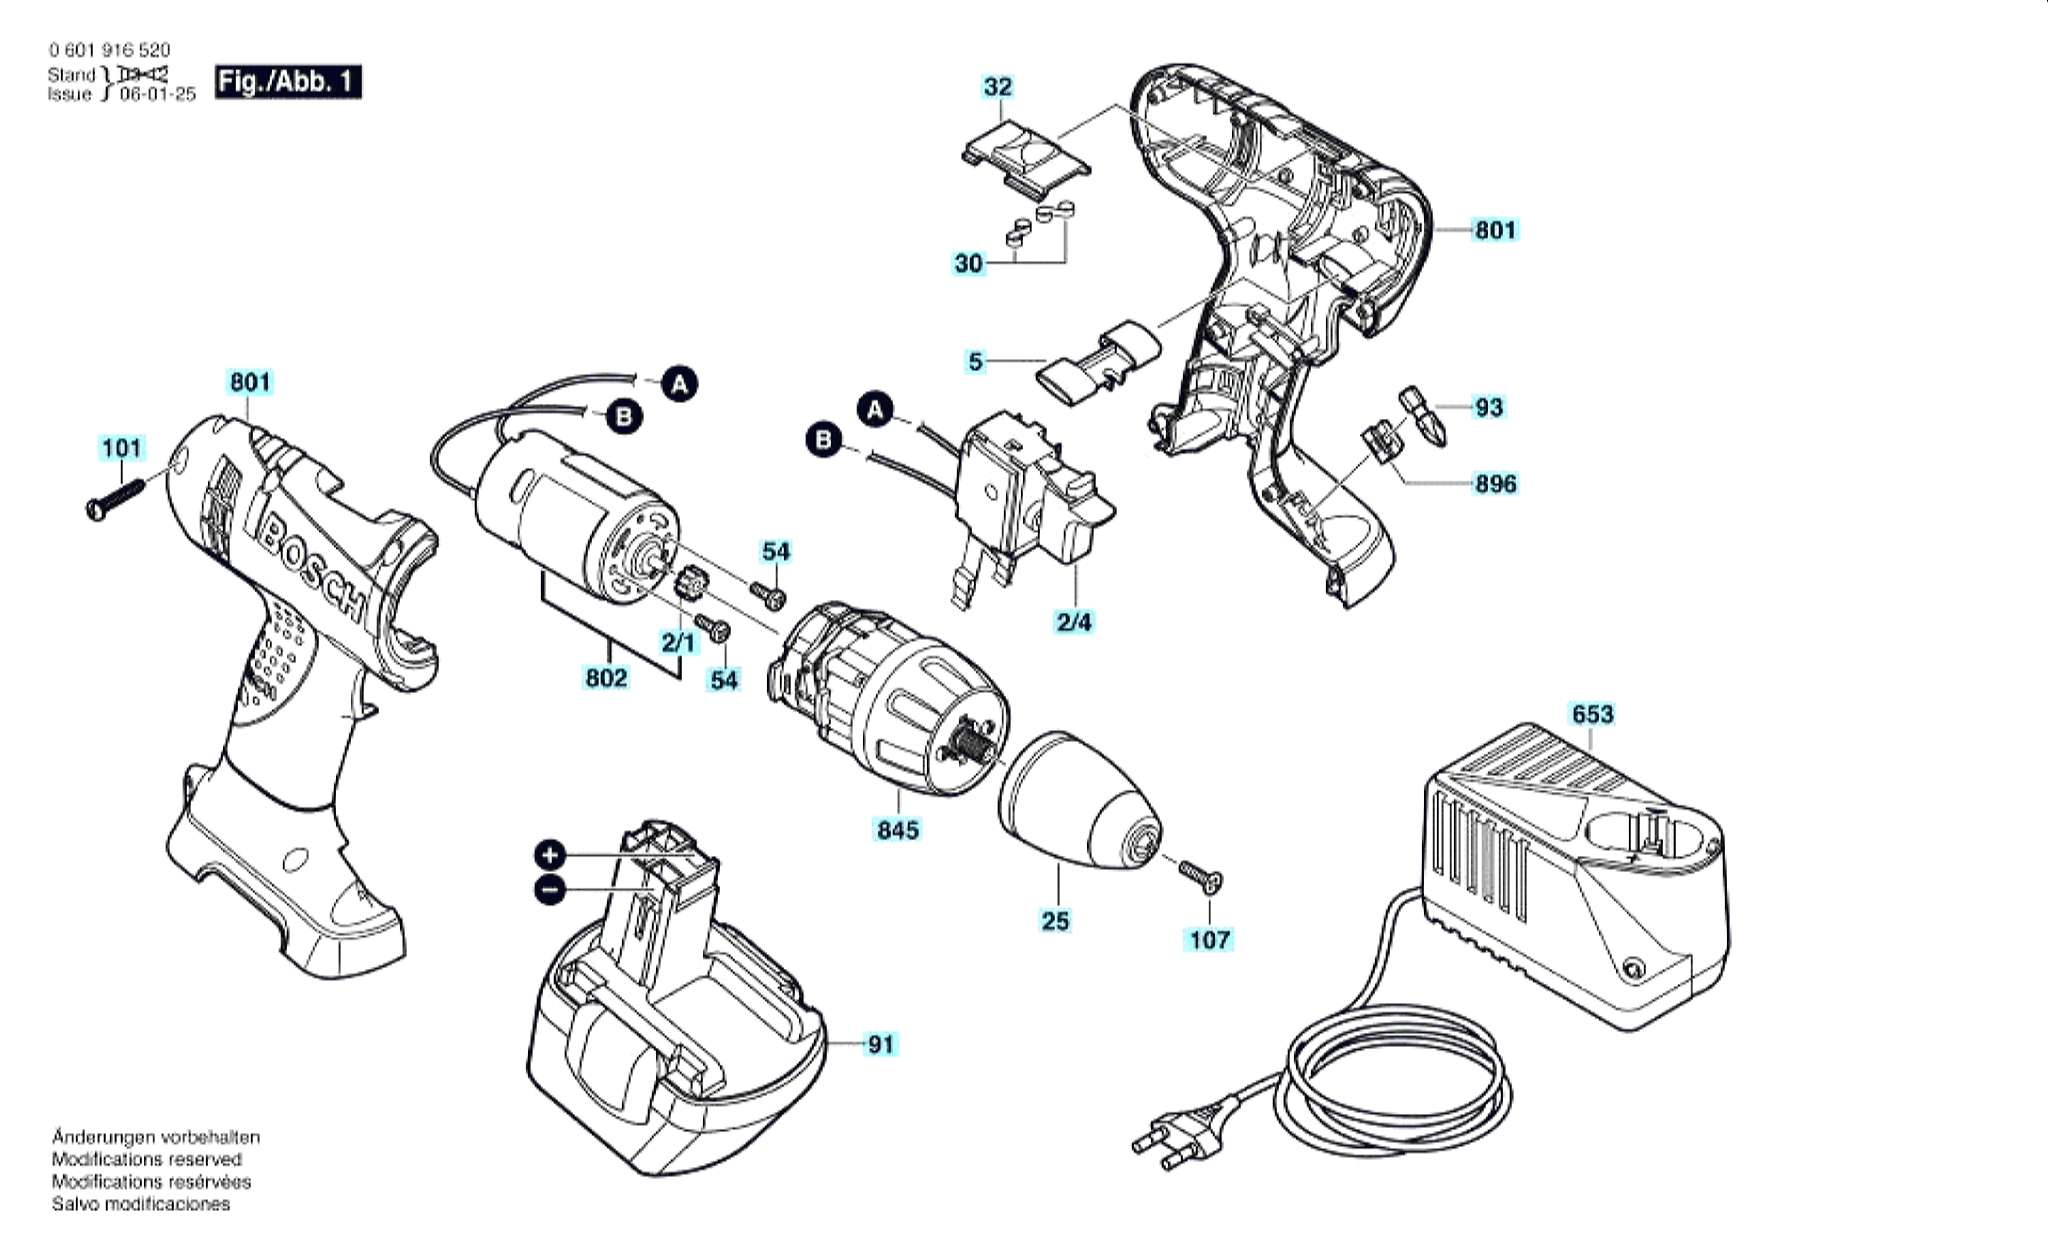 Запчасти, схема и деталировка Bosch GSR 12 V (ТИП 0601916520)